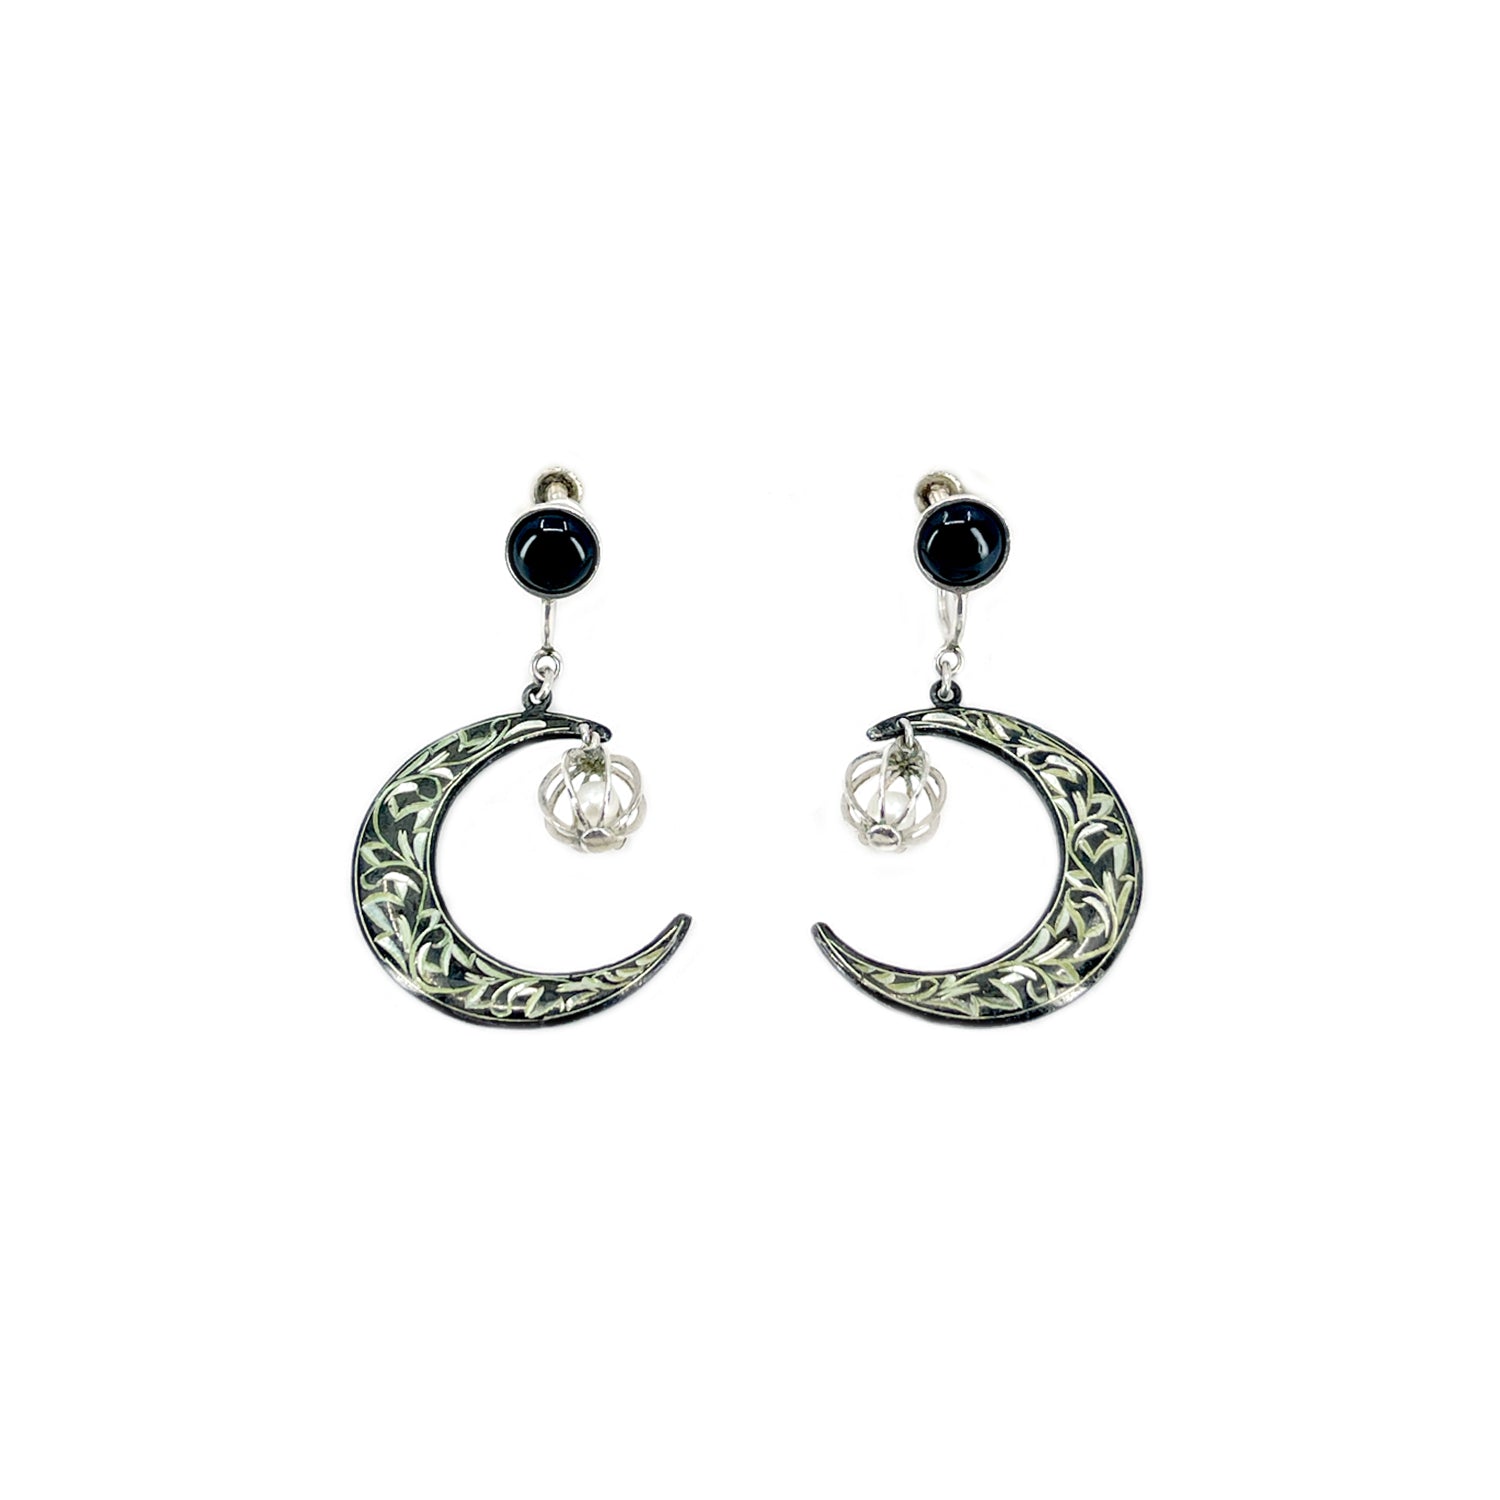 Amita Japan Black Enamel Akoya Saltwater Cultured Pearl Screwback Crescent Moon Earrings- Sterling Silver